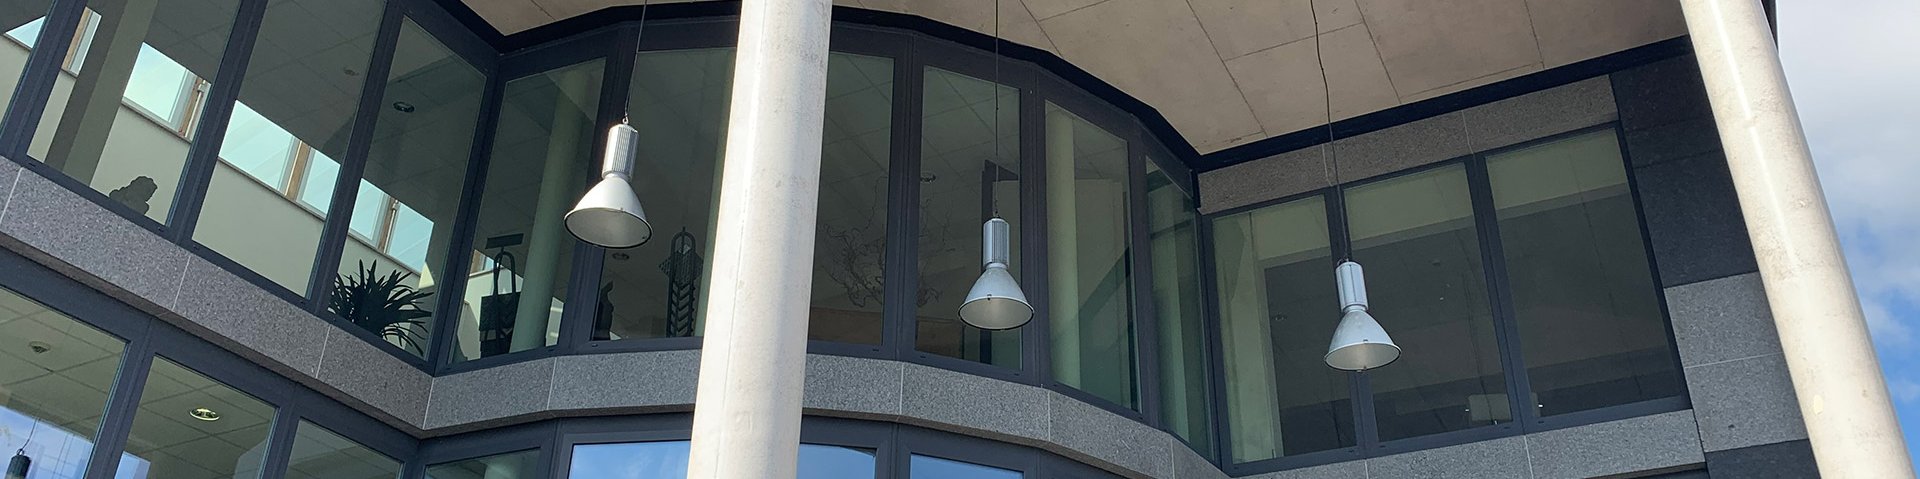 Vorderansicht eines Gebäudes mit einer Glasfront. Von oben hängen Lampen runter